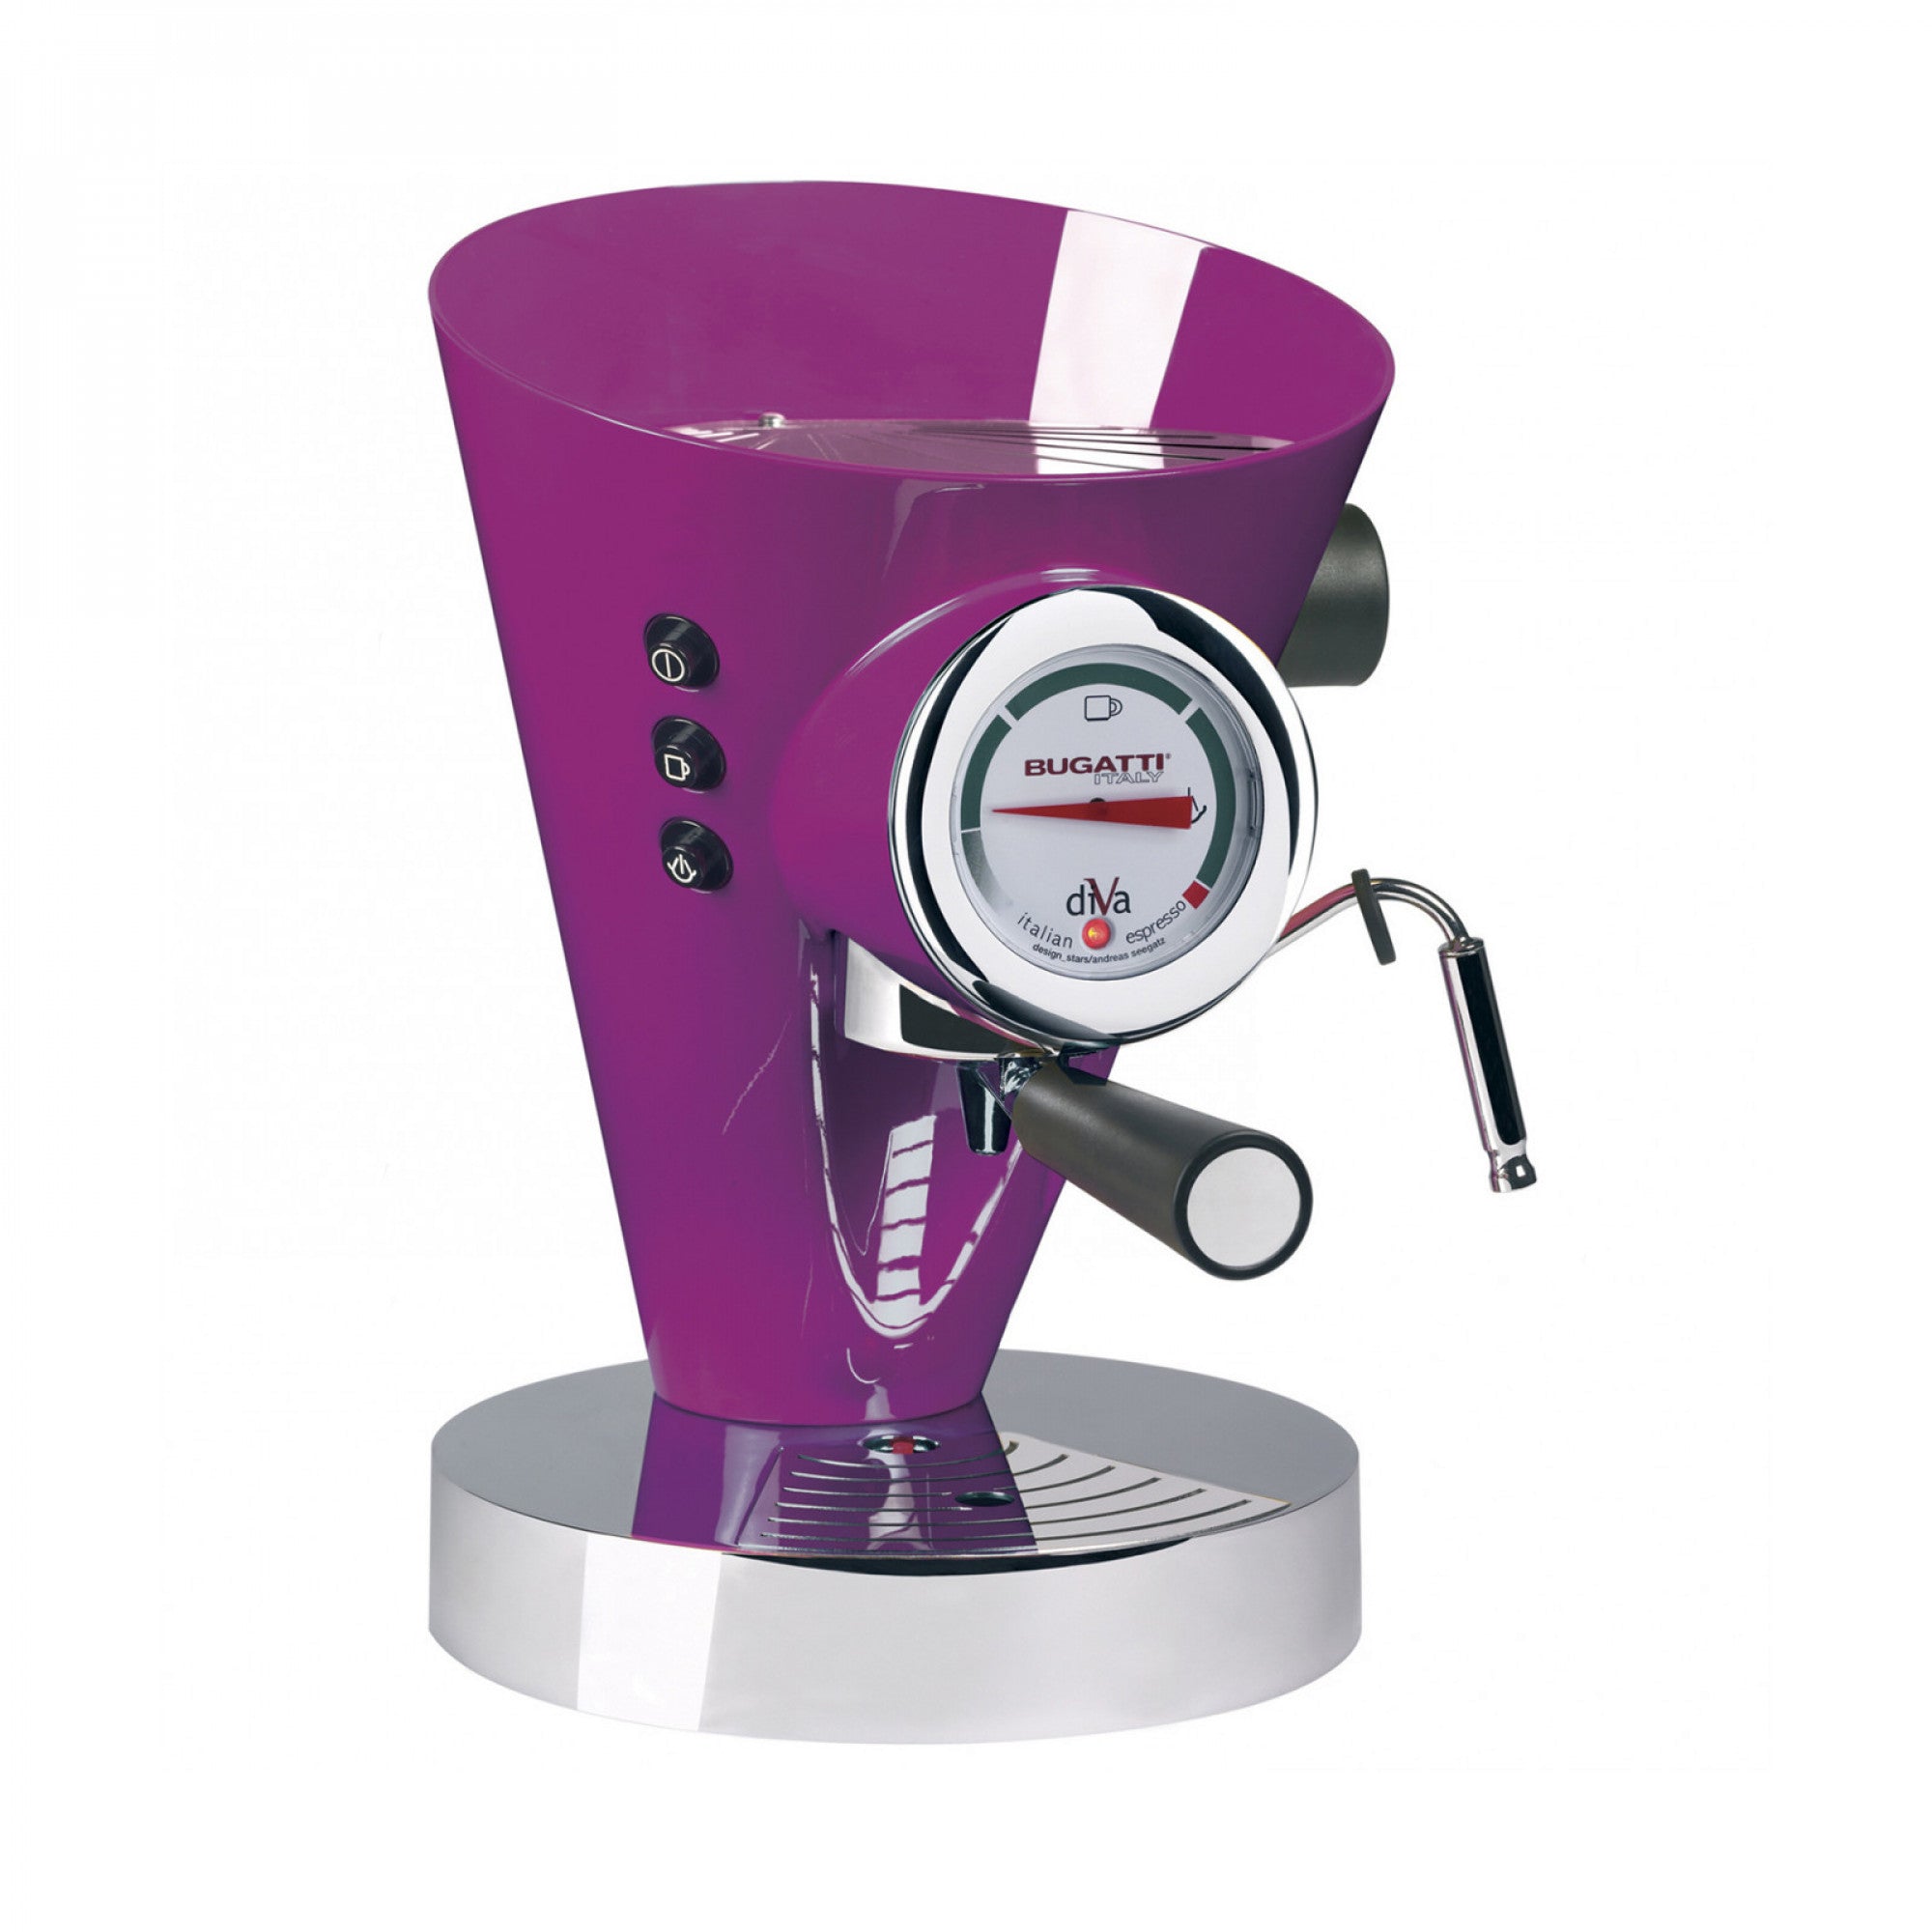 DIVA Espresso Coffee Machine Lilac Plain – Bright Kitchen